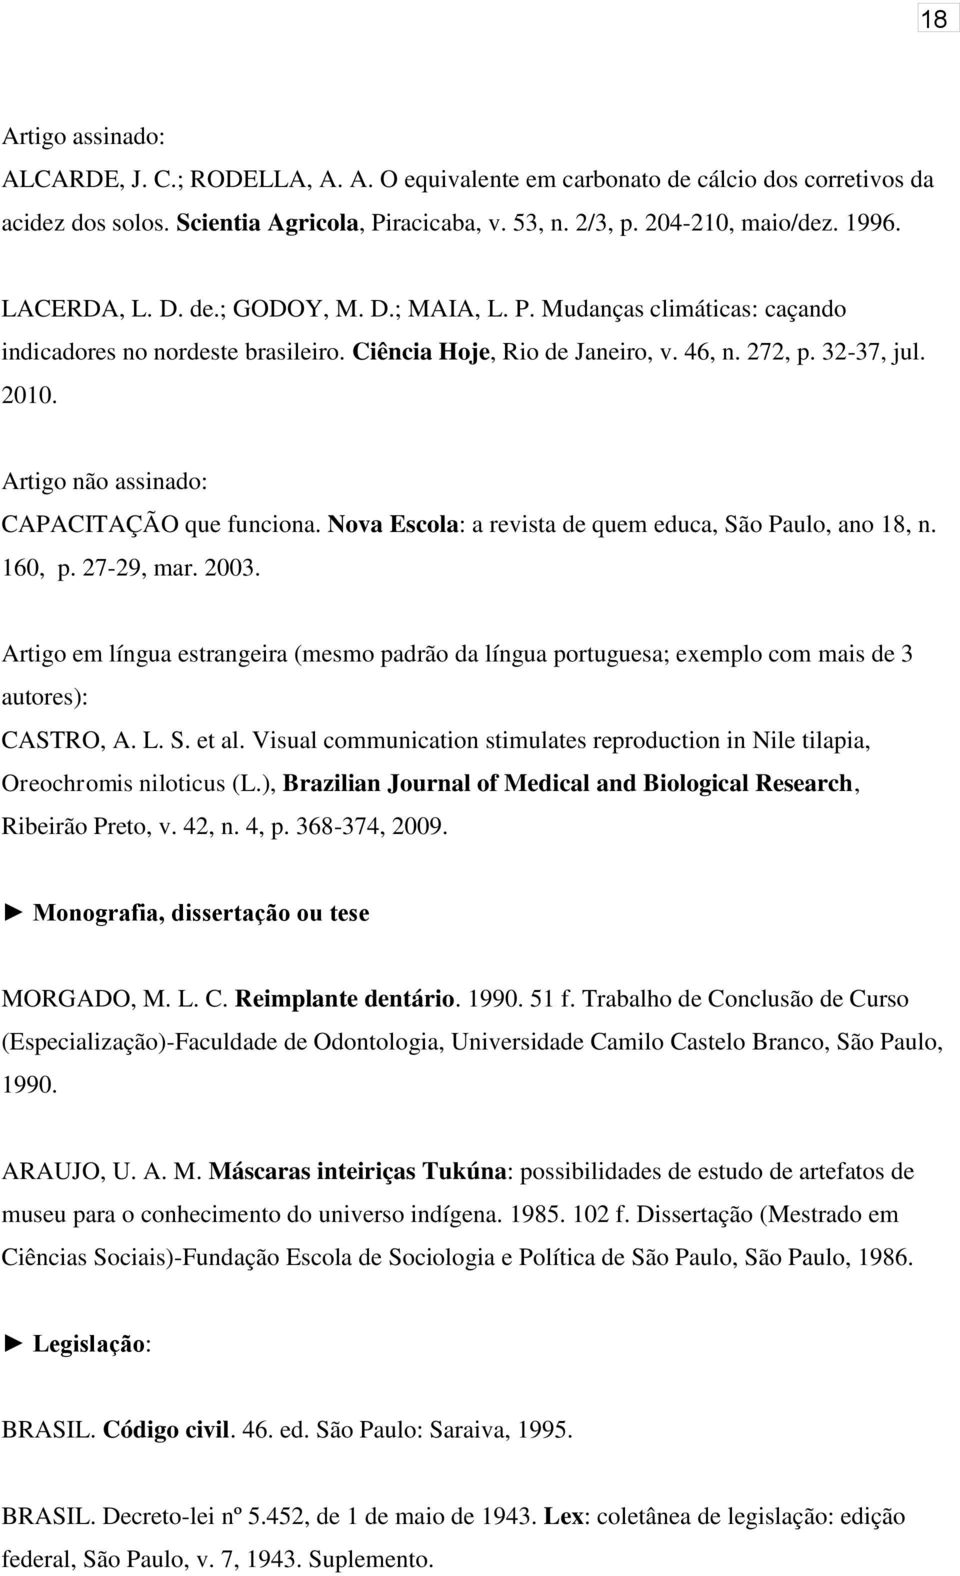 Artigo não assinado: CAPACITAÇÃO que funciona. Nova Escola: a revista de quem educa, São Paulo, ano 18, n. 160, p. 27-29, mar. 2003.